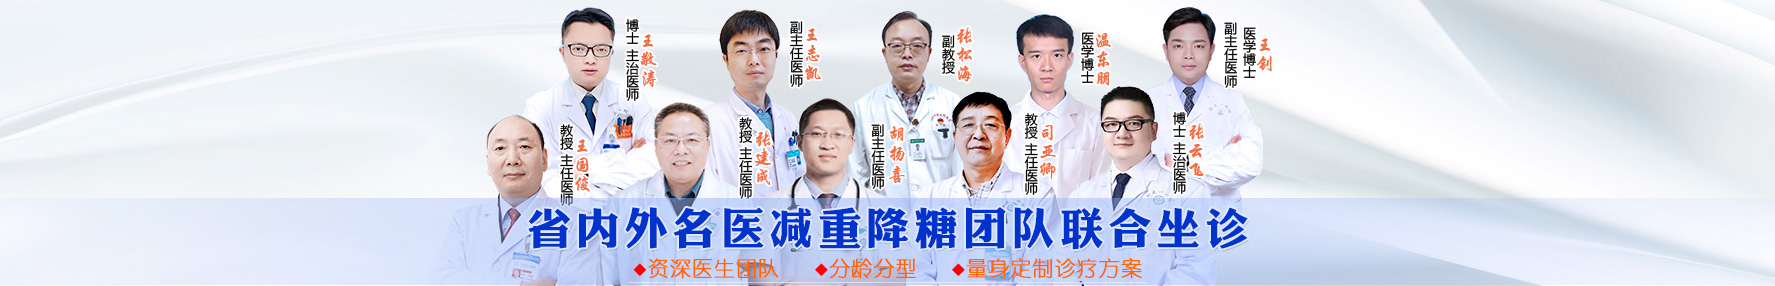 郑州亚太减重糖尿病医学研究院--糖尿病患者的救星